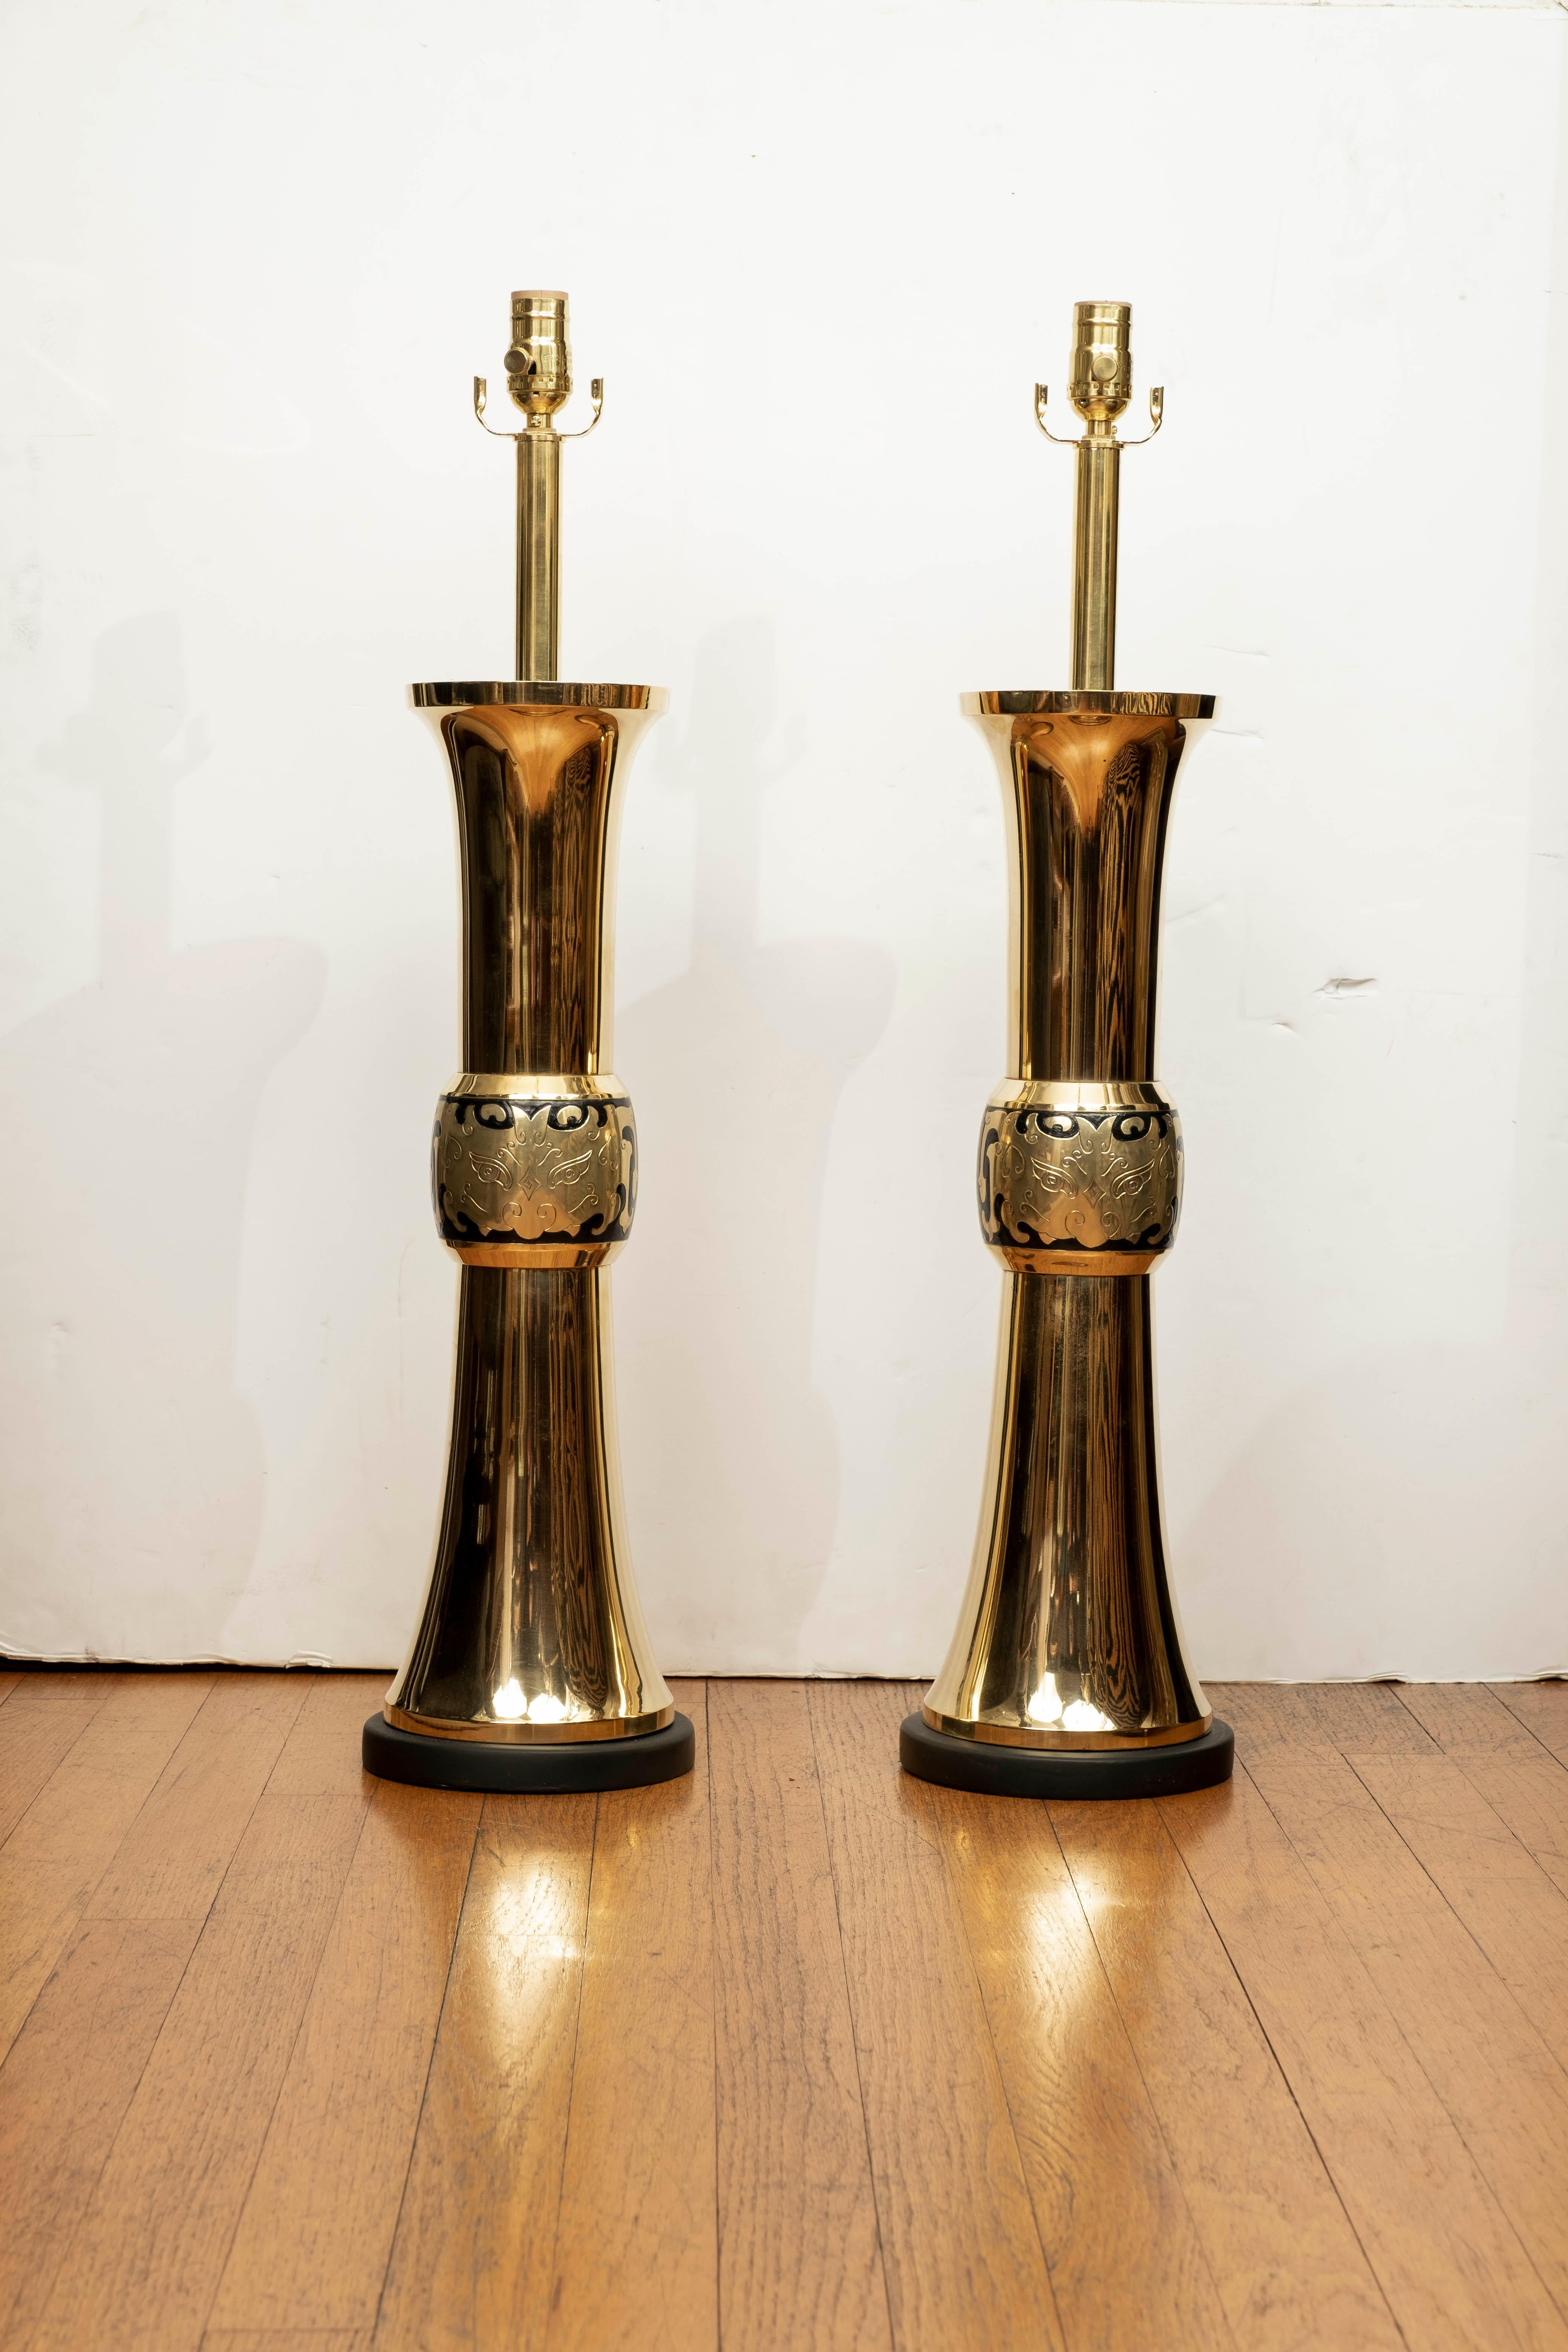 Großes Paar Messinglampen von James Mont. Dieses atemberaubende Paar Hollywood Regency Asian Modern Brass Lampen sind Statement Pieces und wurden neu verdrahtet mit neuen Steckdosen für den US-Markt.